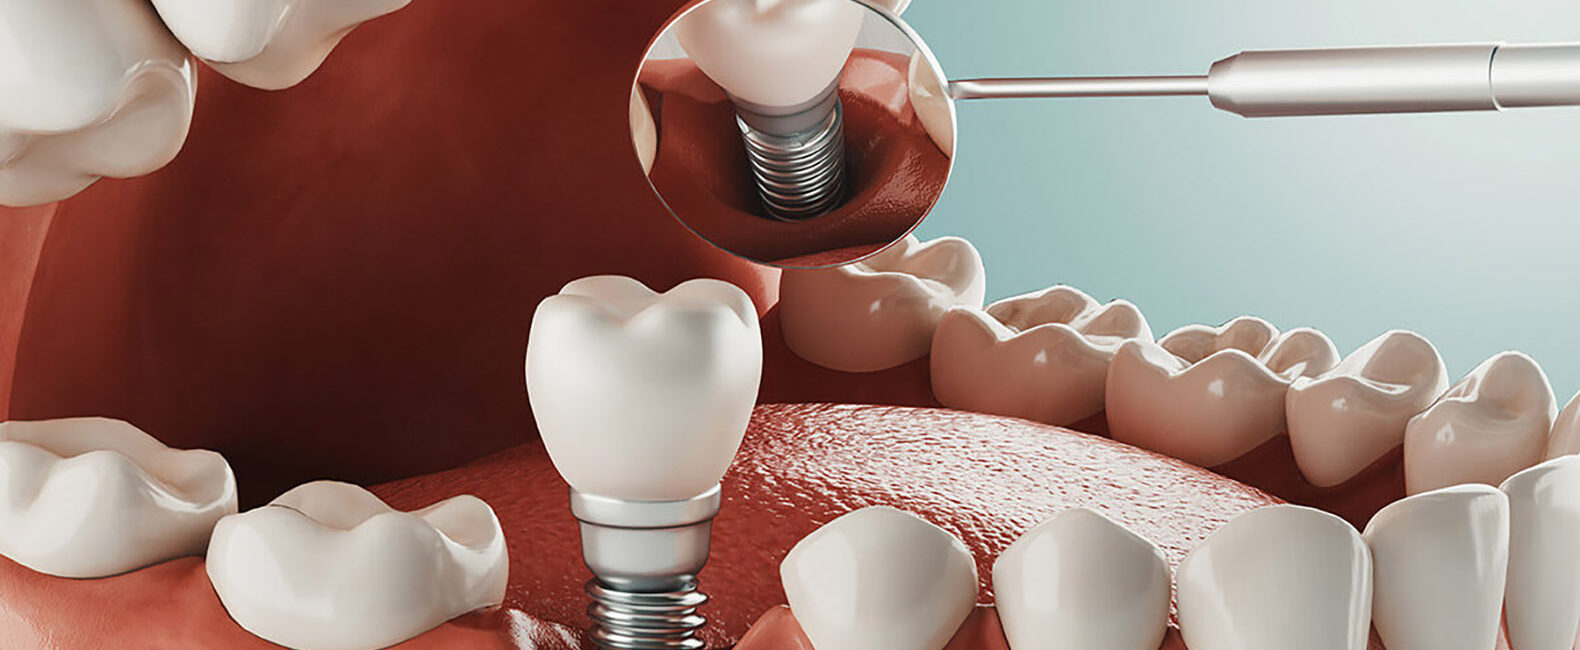 dental implants Turkey teeth